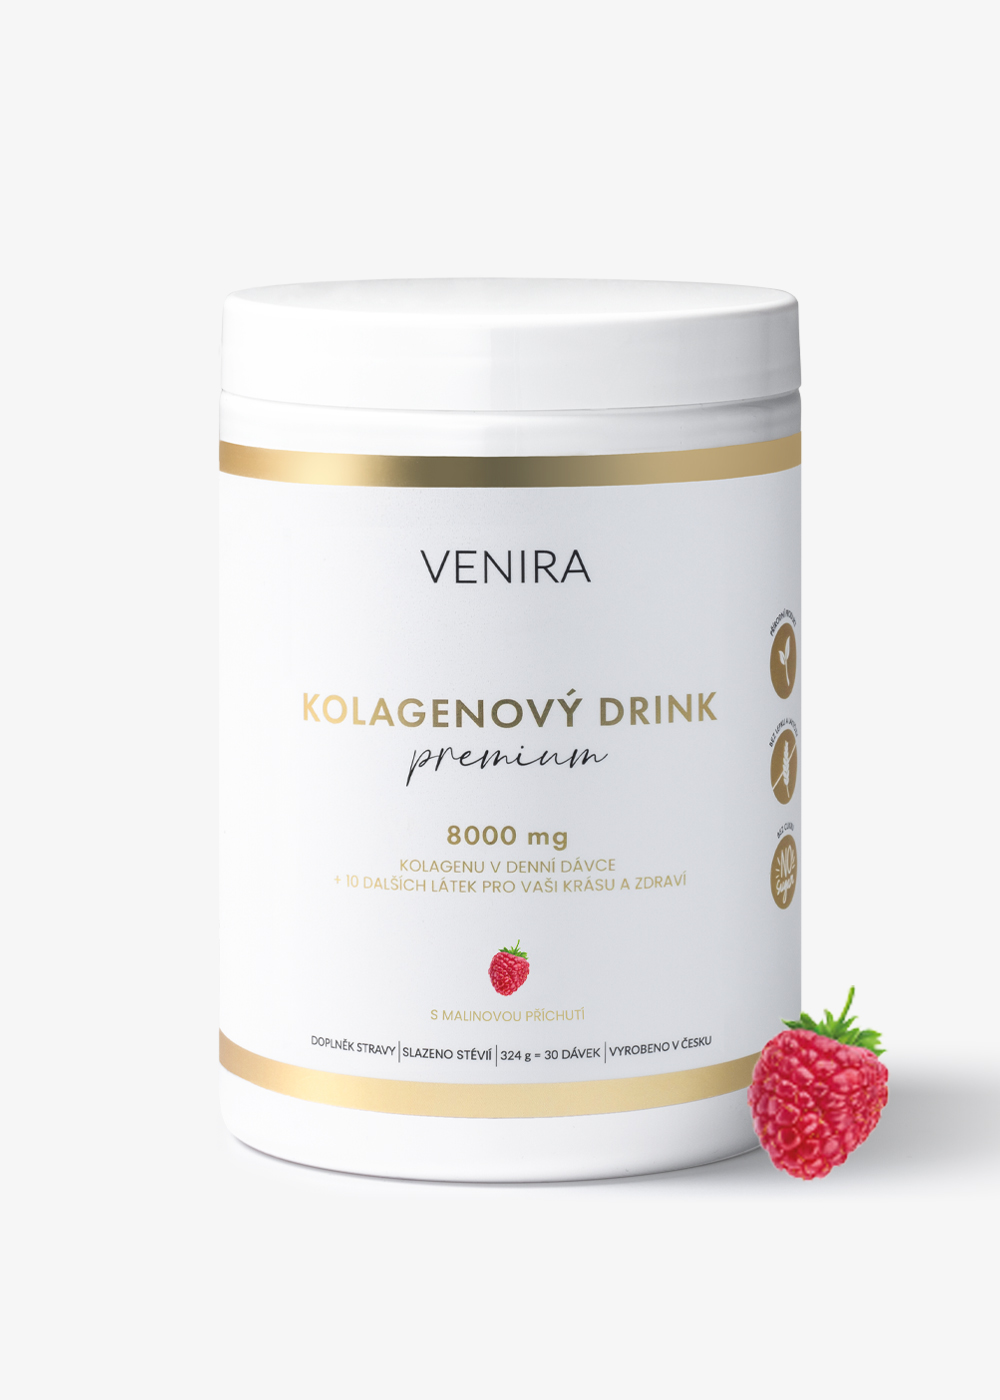 VENIRA PREMIUM kolagenový drink s malinovou příchutí, 324 g